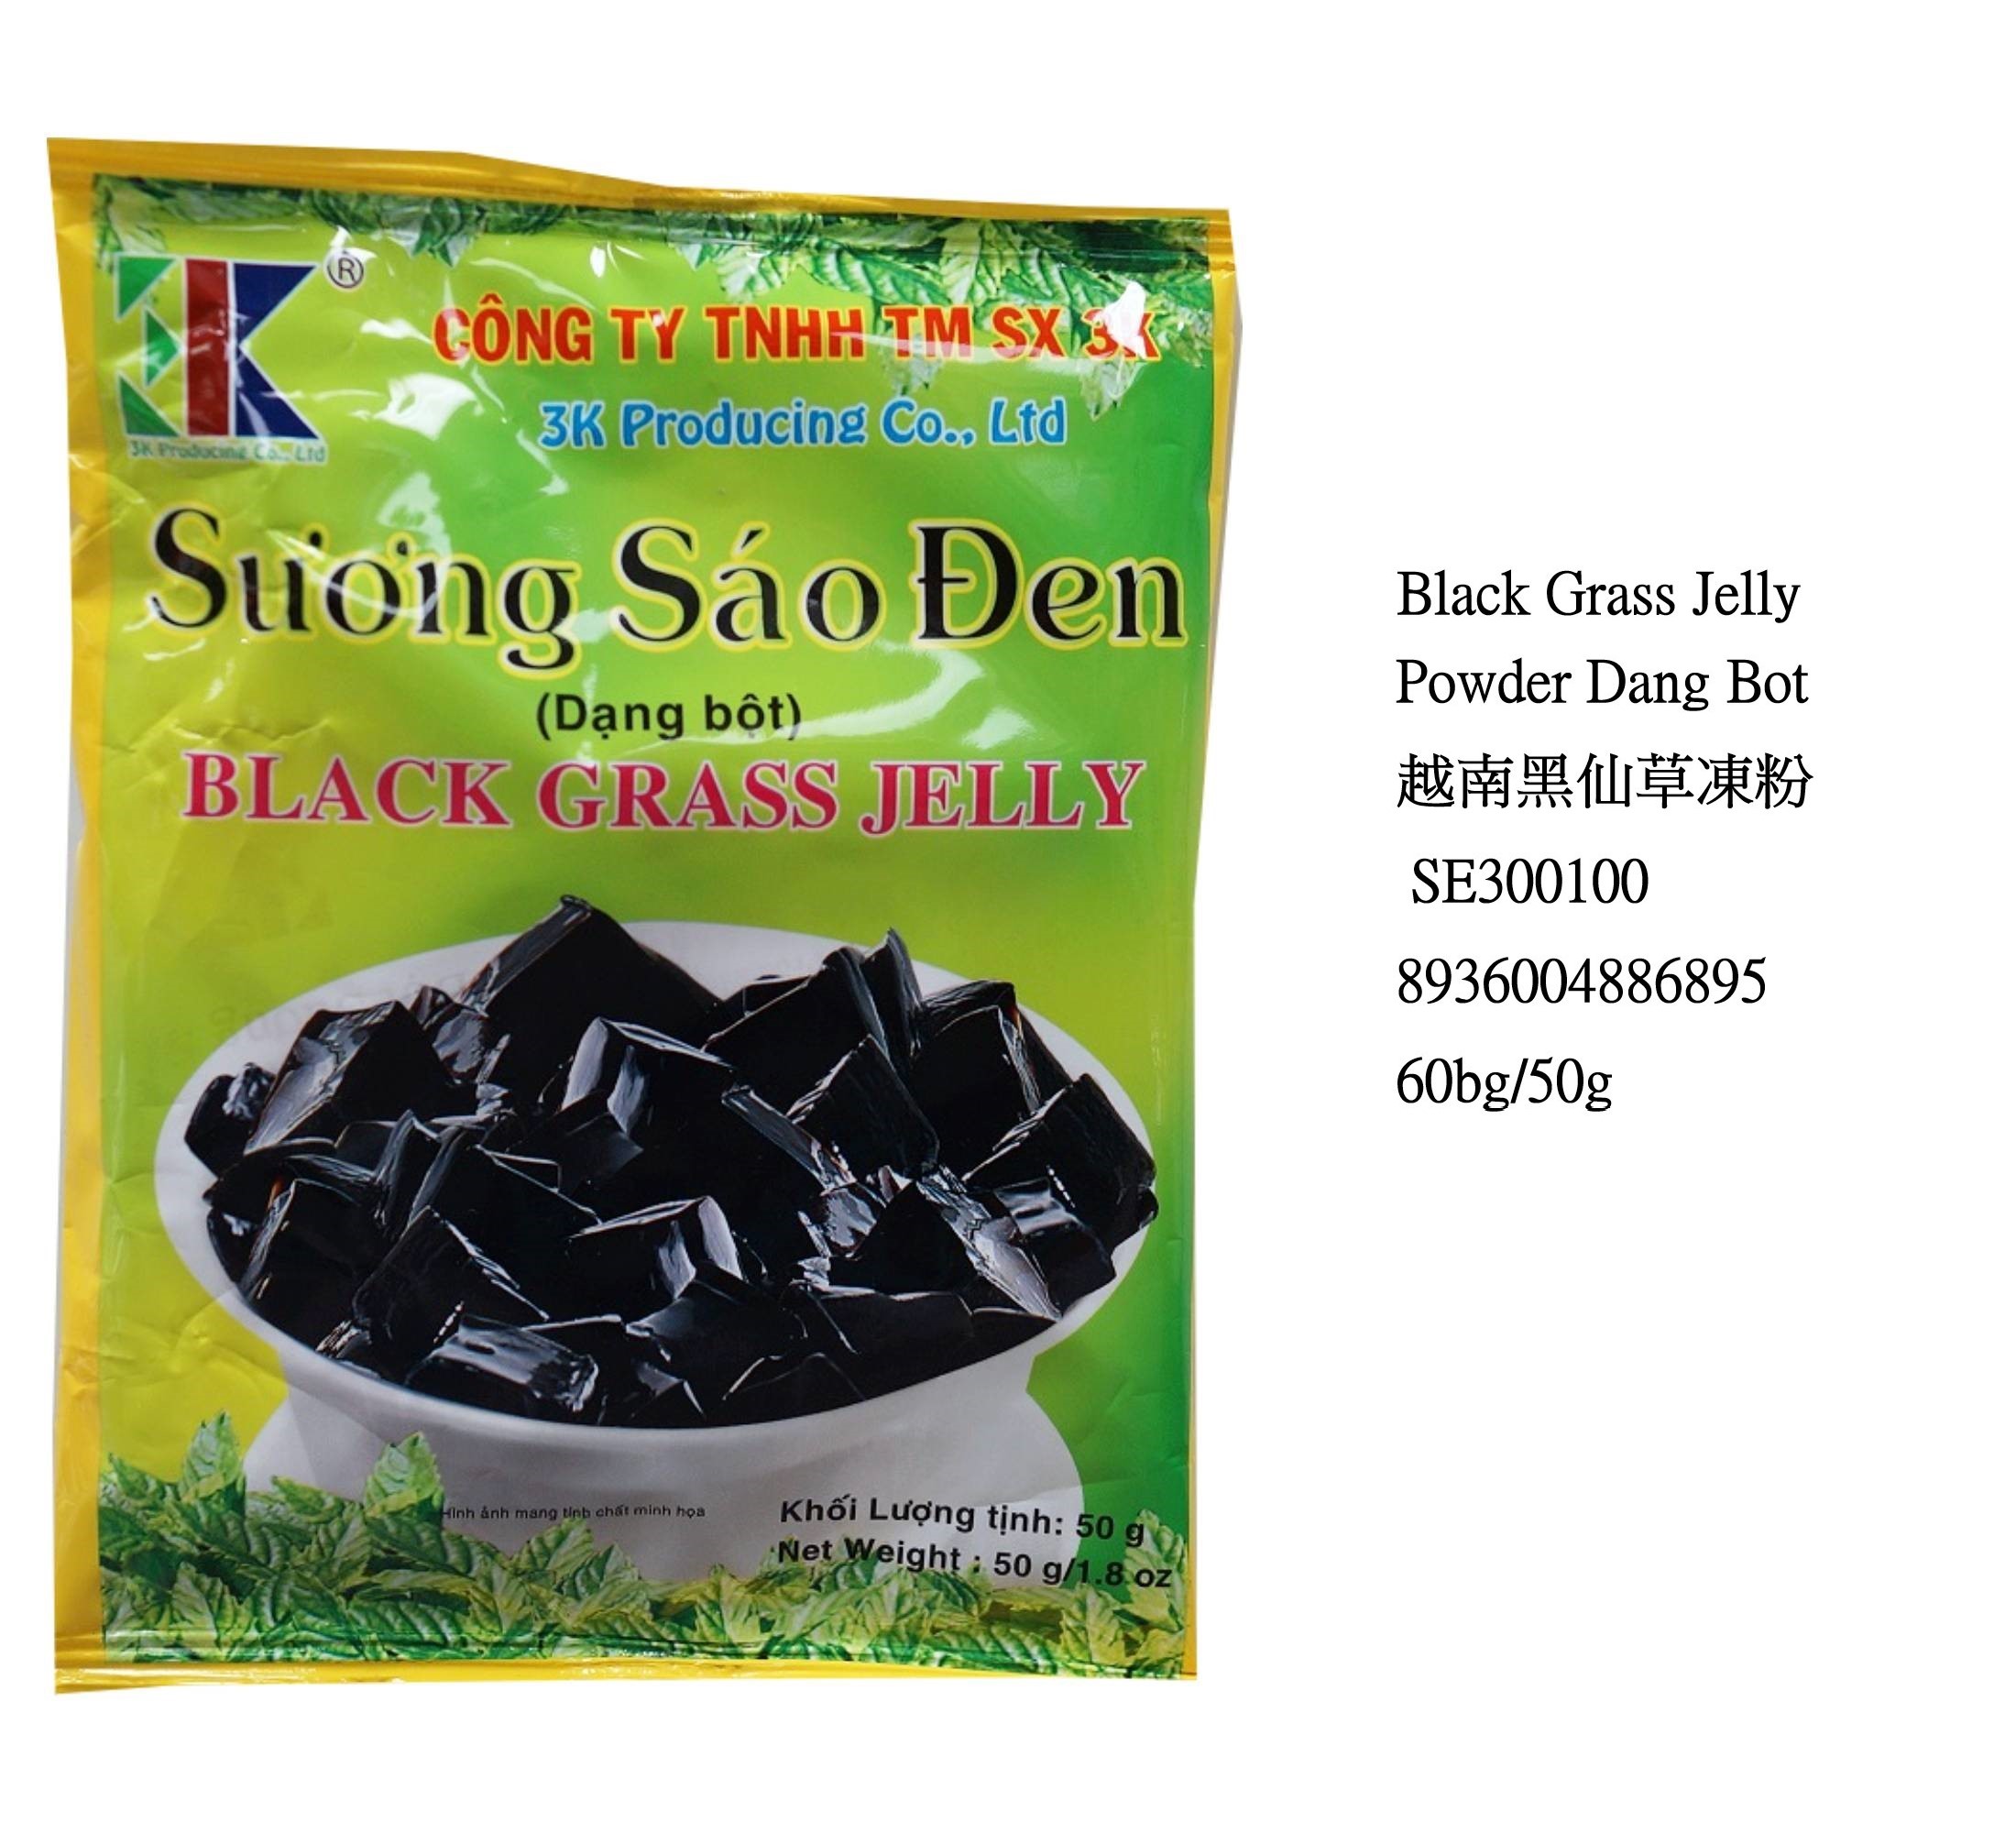 BLACK GRASS JELLY POWDER DANG BOT SE300100